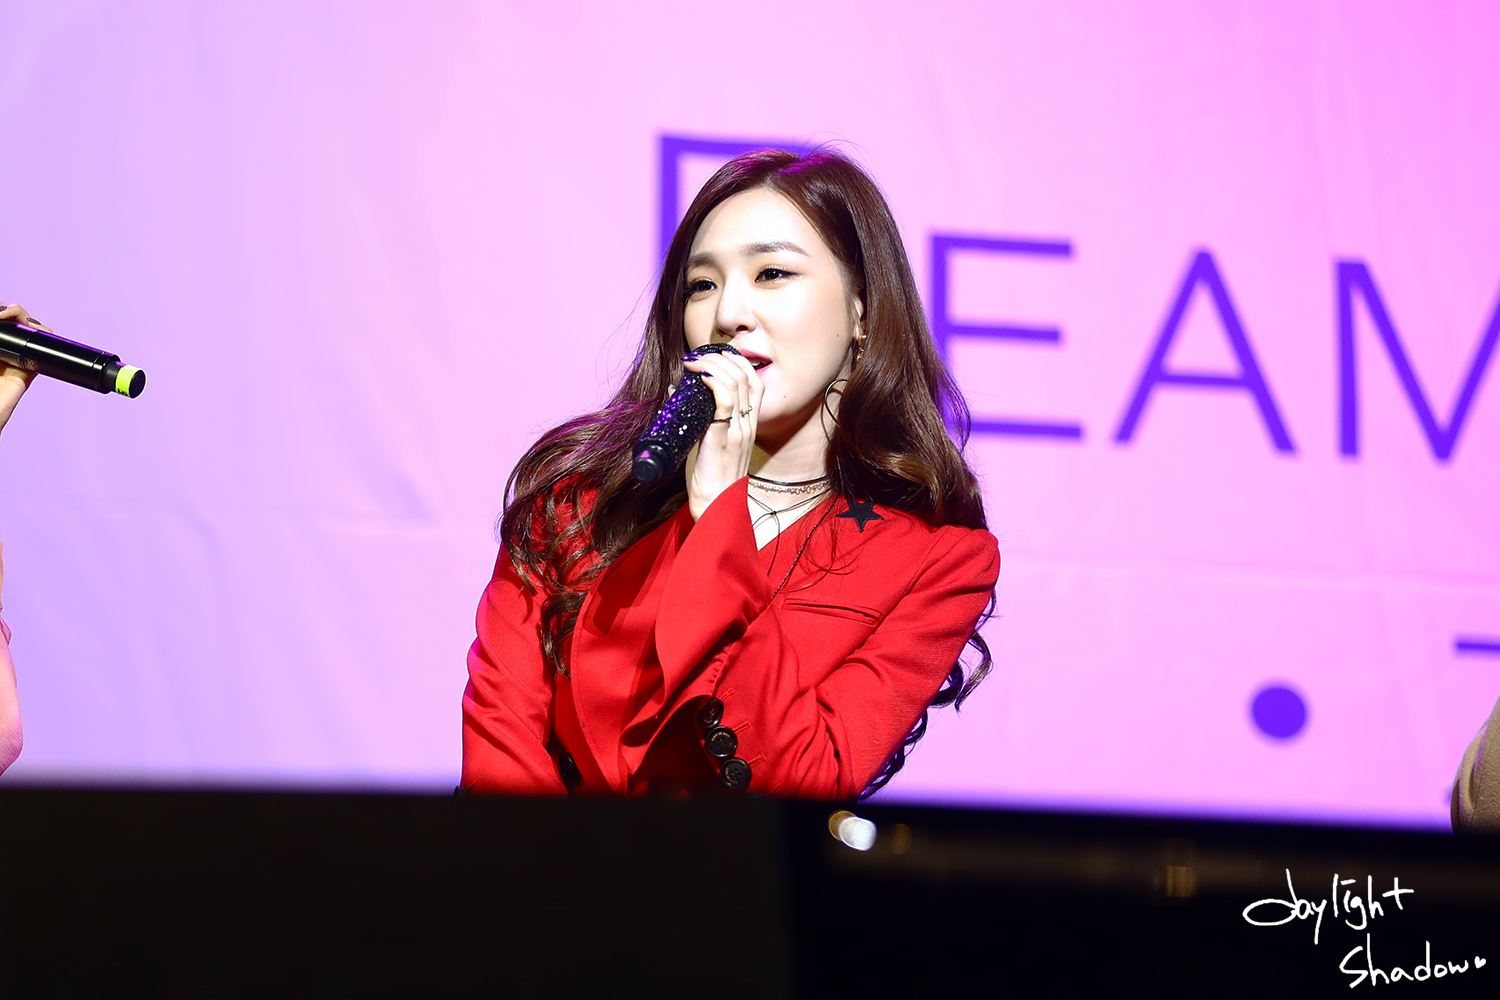 [PIC][13-01-2017]SooYoung tổ chức Buổi hòa nhạc Từ thiện - "Beaming Effect" + Tiffany tham dự với vai trò khách mời vào tối nay - Page 2 234E66465881D97A1ECFB1